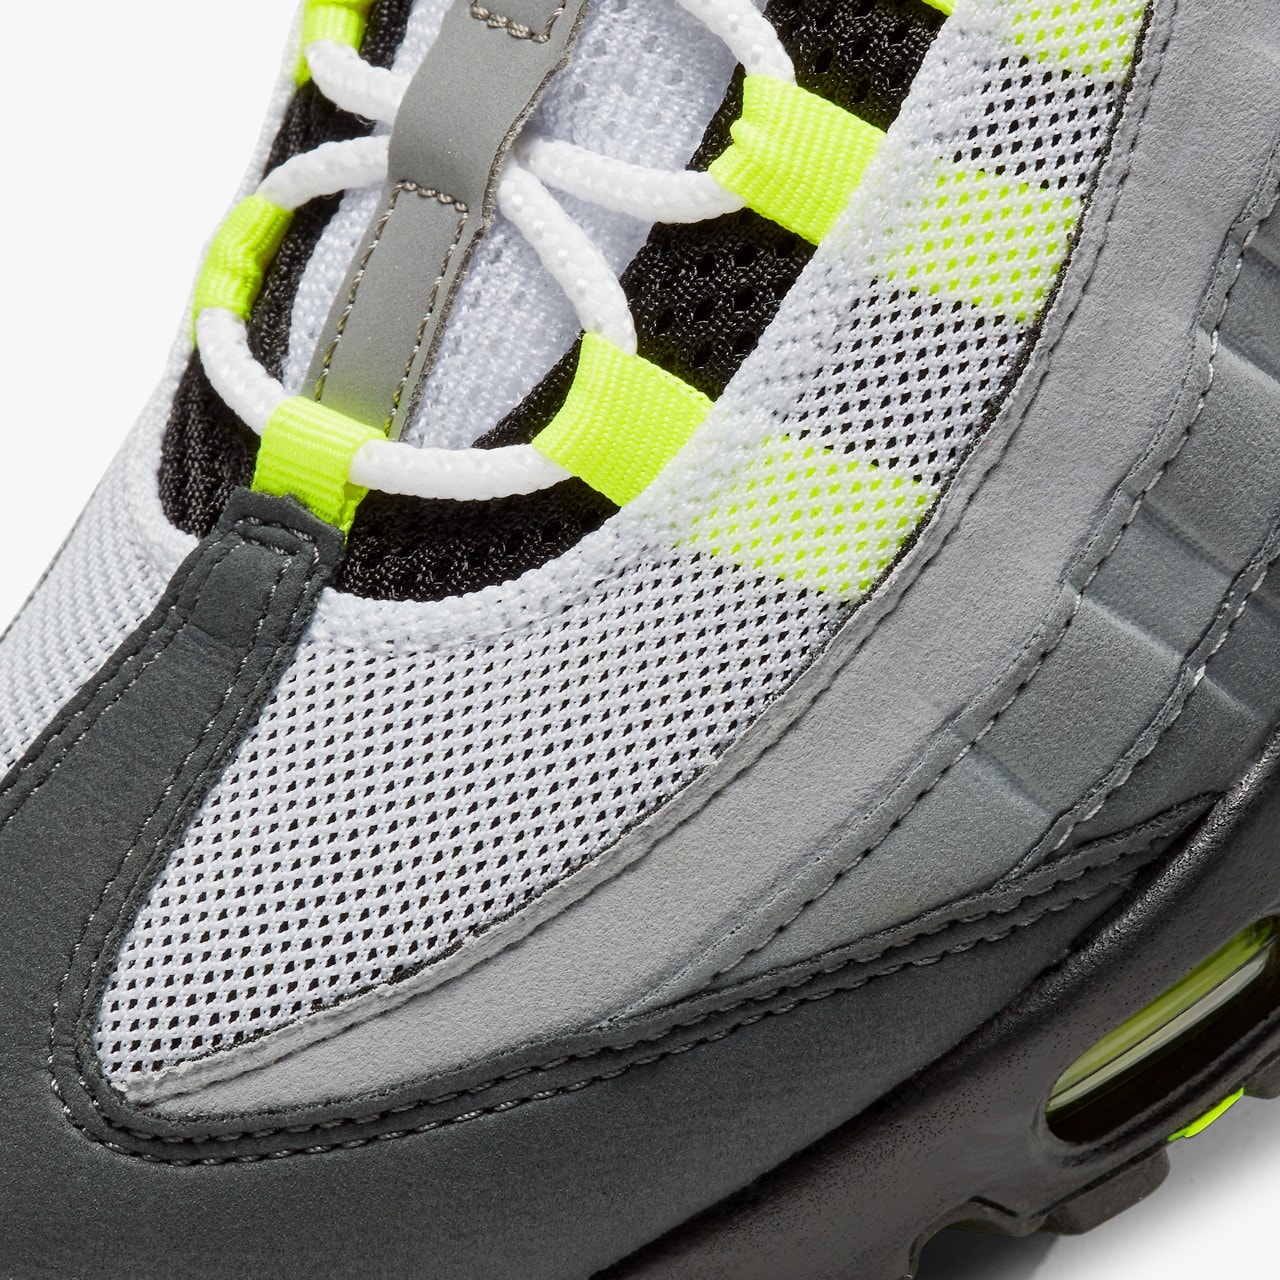 Nike Air Max 95 元祖配色「Neon」官方圖輯、發售情報正式公開